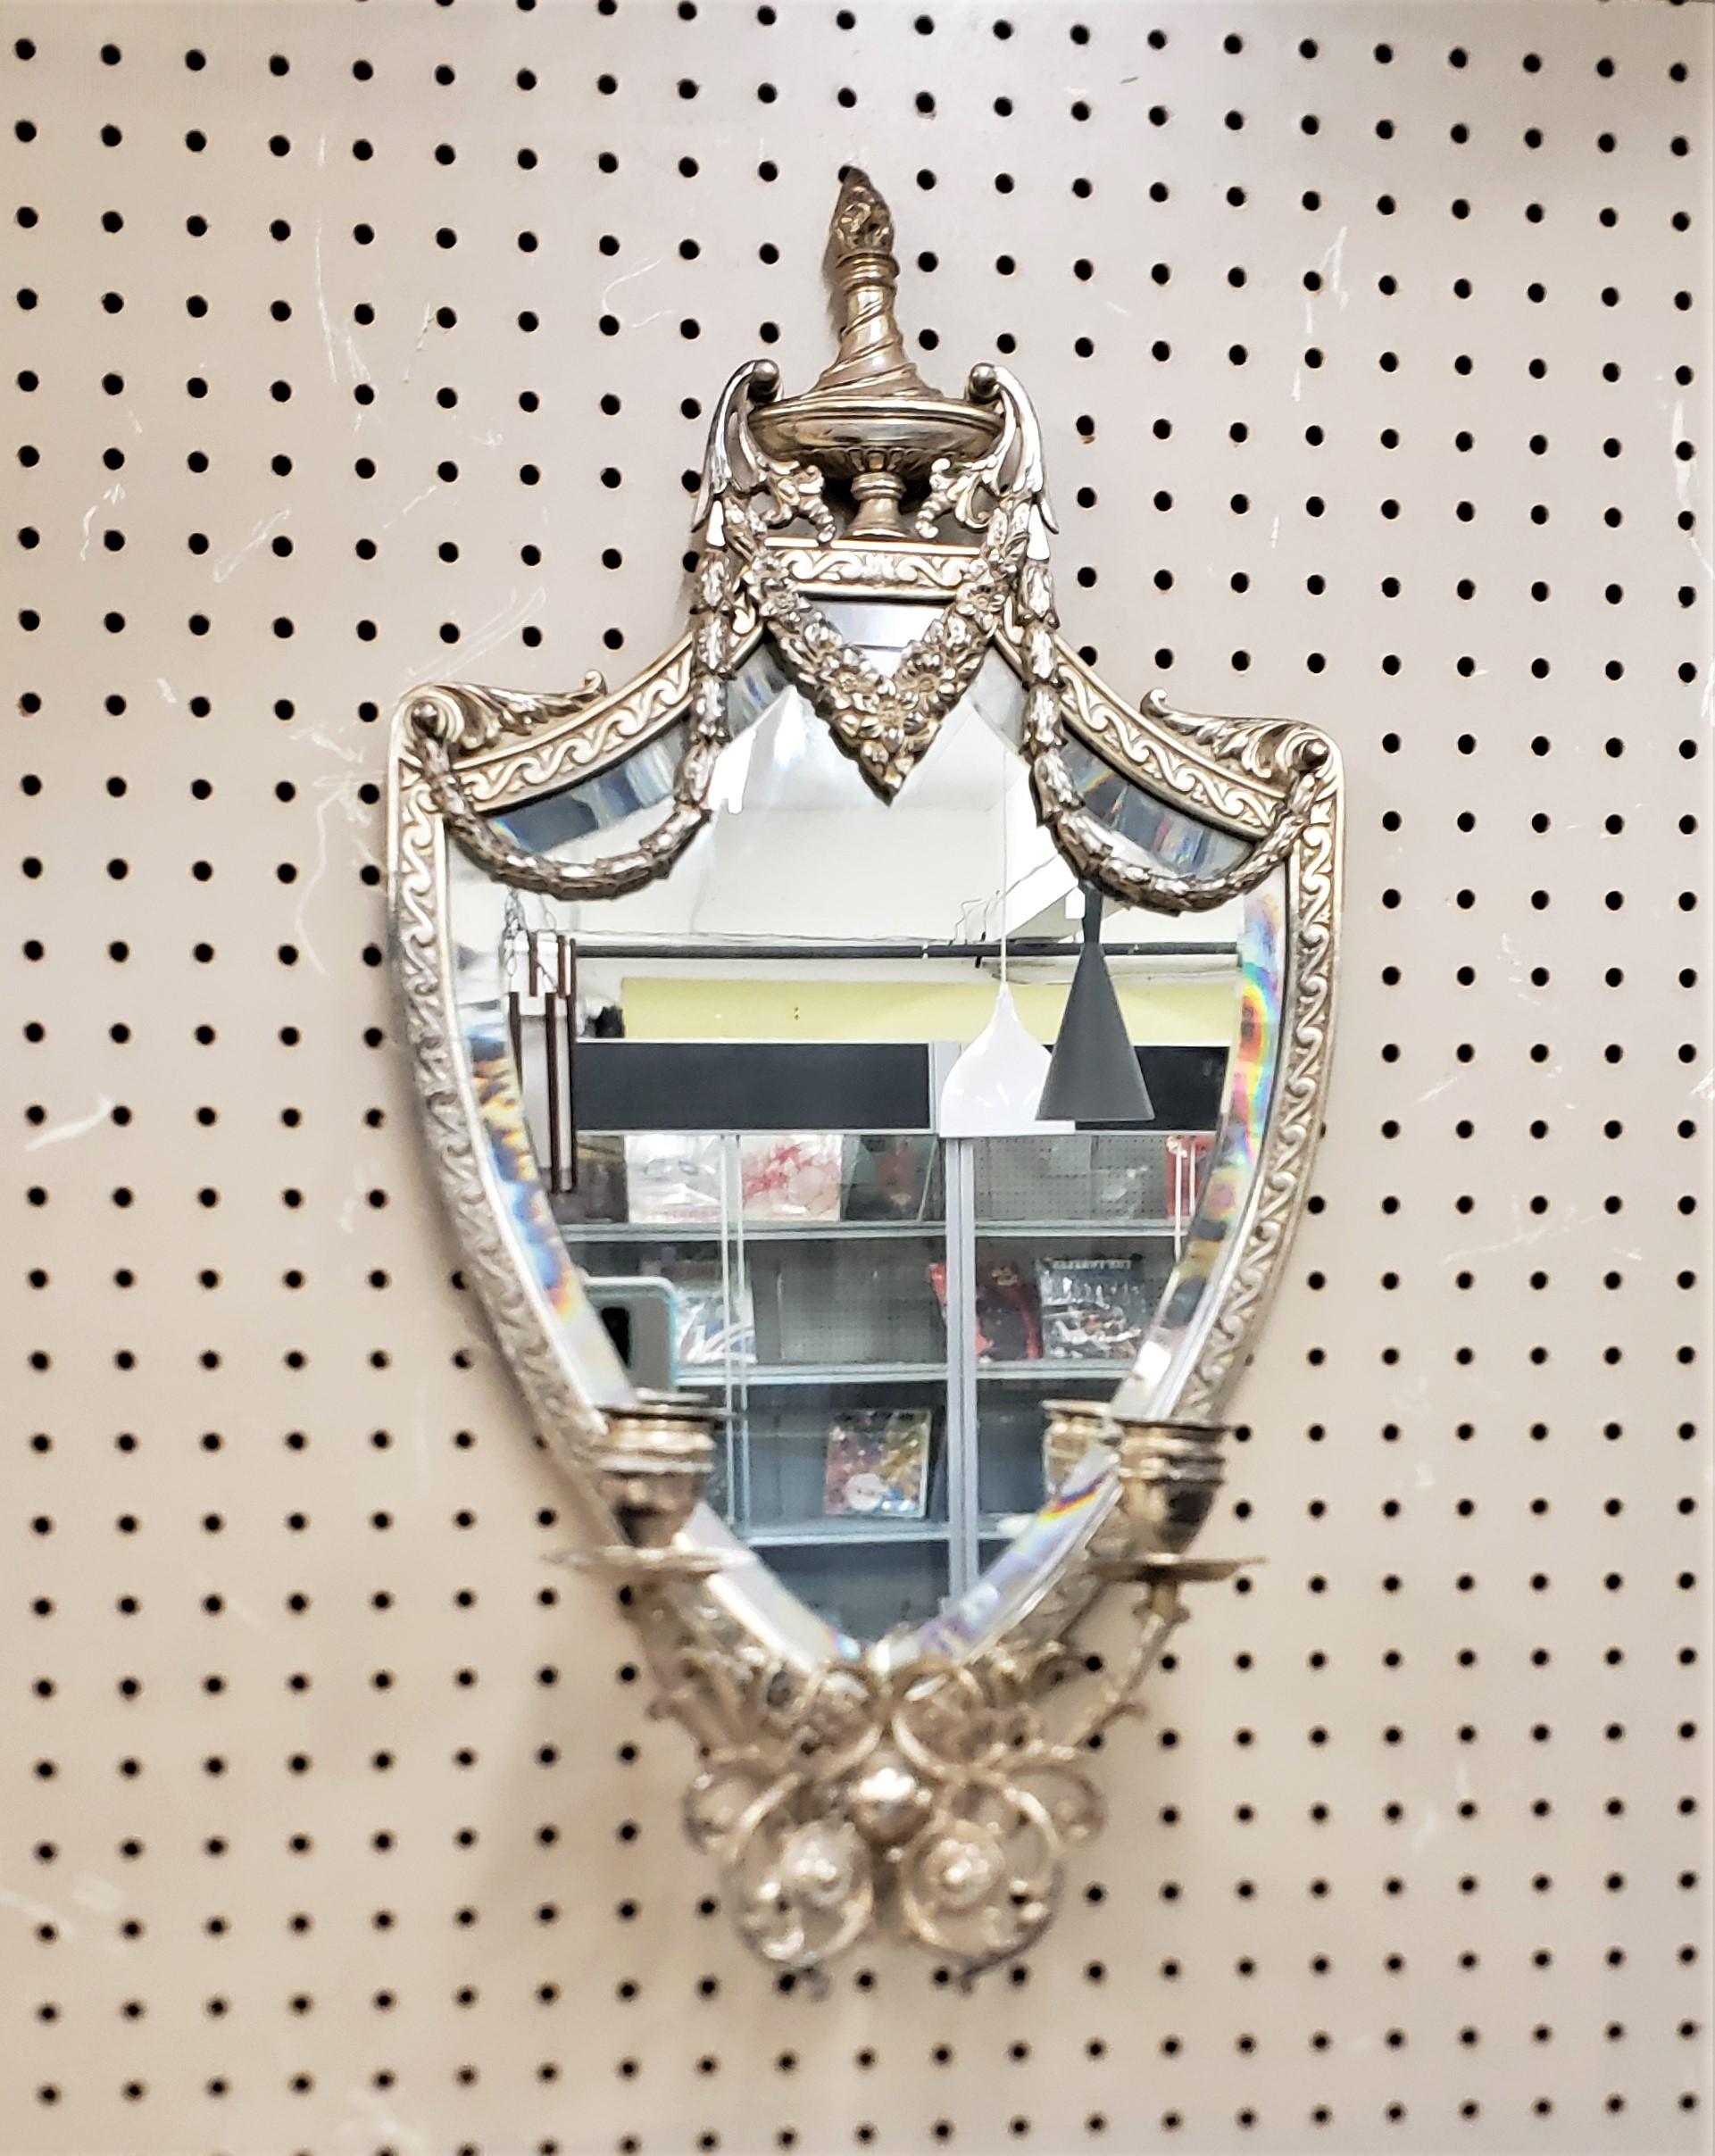 Cet ancien miroir mural argenté ou applique à bougie est marqué au dos par un fabricant inconnu, mais on présume qu'il a été fabriqué aux États-Unis vers 1900. Le miroir mural biseauté est en forme de bouclier avec des décorations en relief de